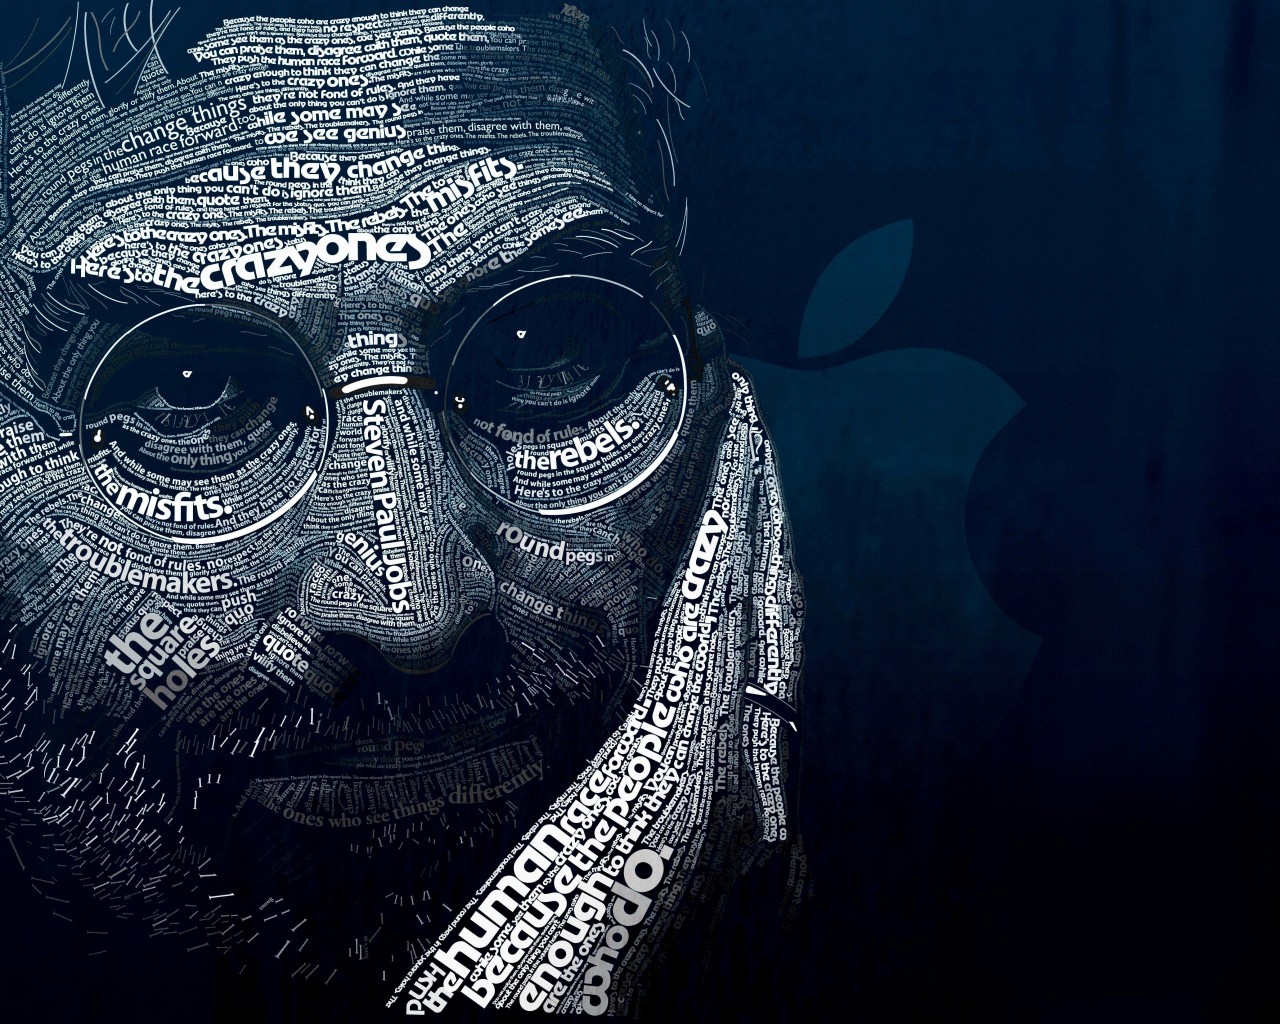 Steve Jobs Typographic Portrait Wallpaper for Desktop 1280x1024